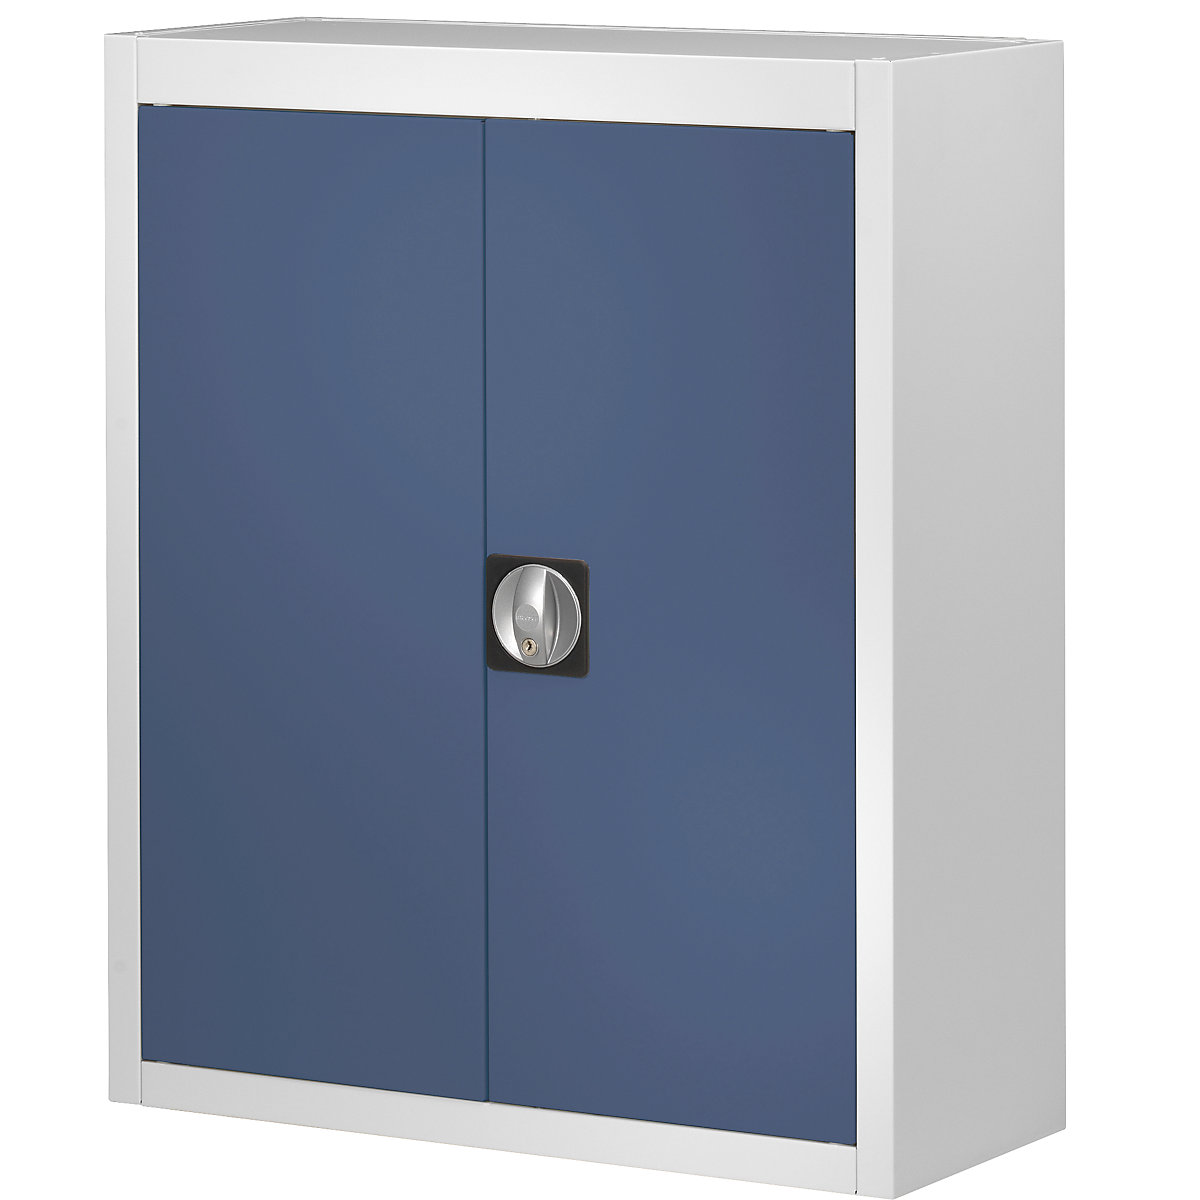 Magazijnkast, zonder magazijnbakken – mauser, h x b x d = 820 x 680 x 280 mm, tweekleurig, kastframe grijs, deuren blauw-6